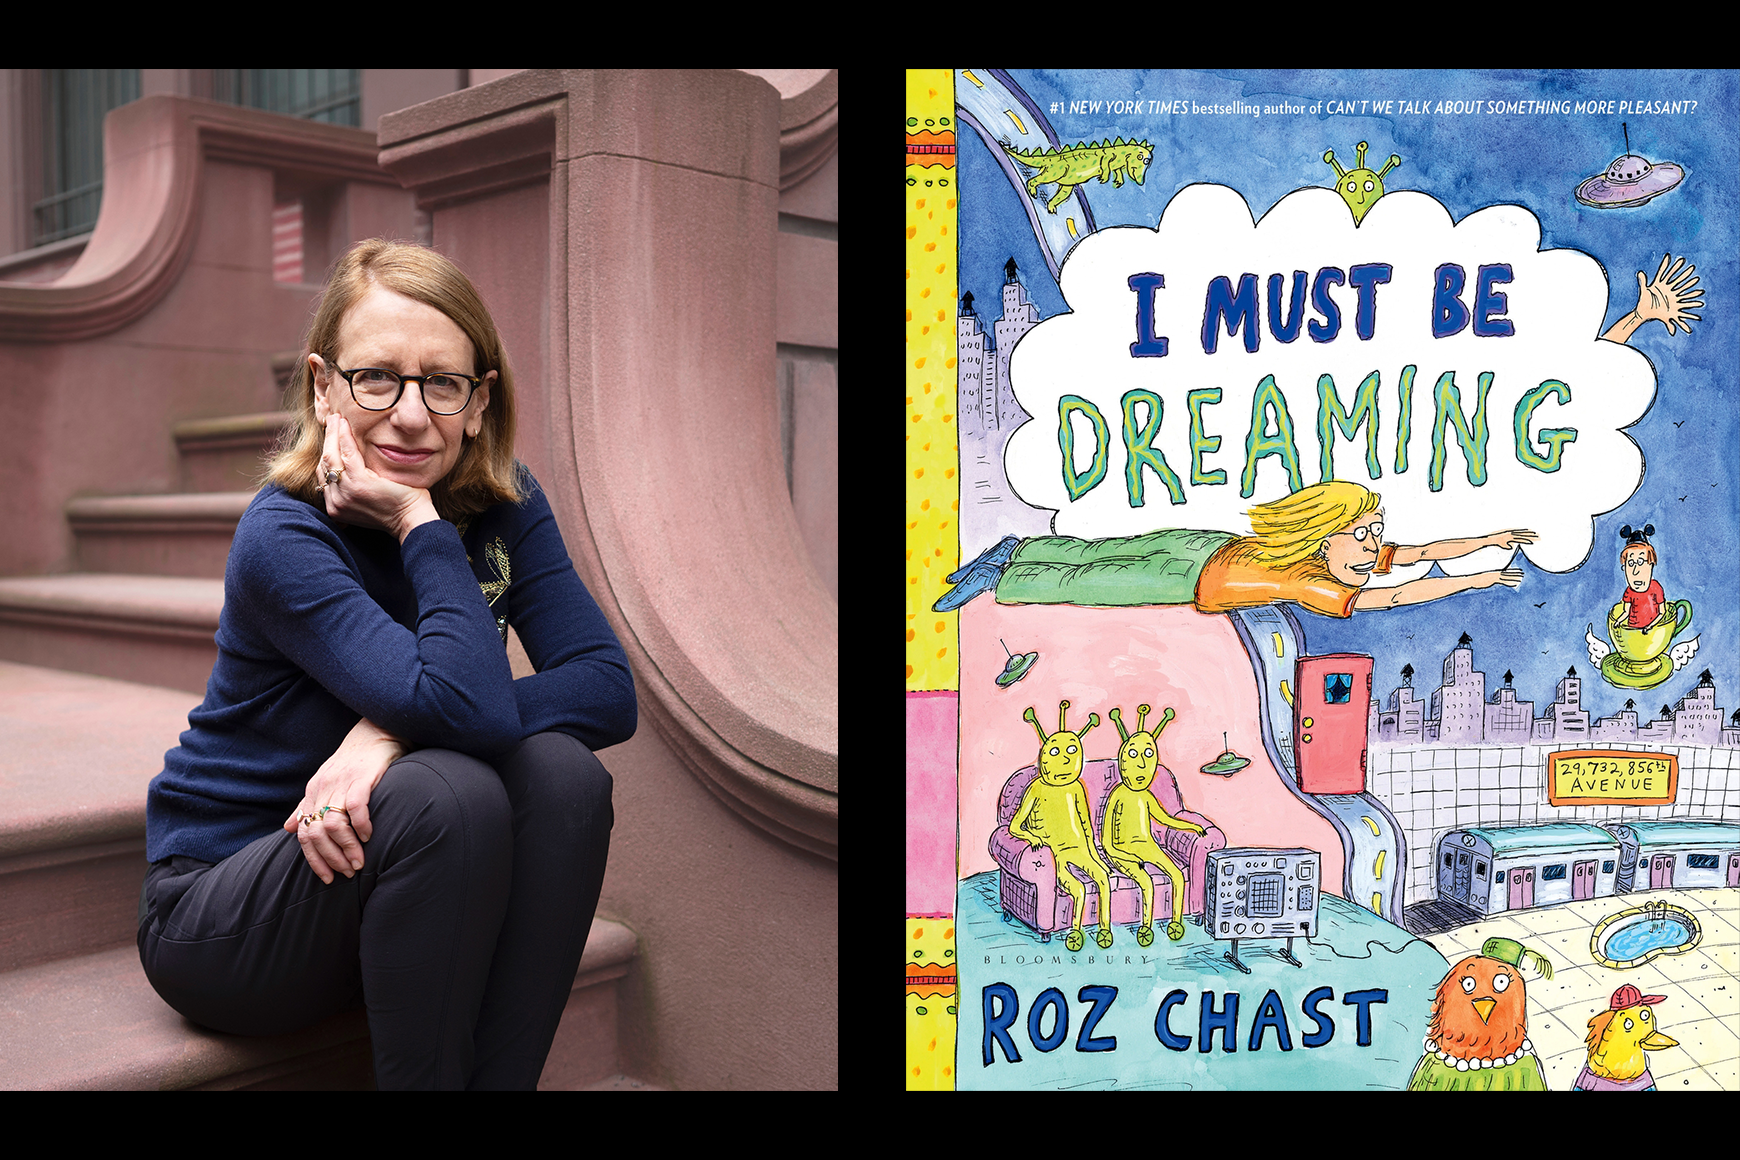 Esquerda: Imagem de Roz Chast sentada na varanda de arenito Direita: Gráfico colorido Capa do livro "I Must Be Dreaming"